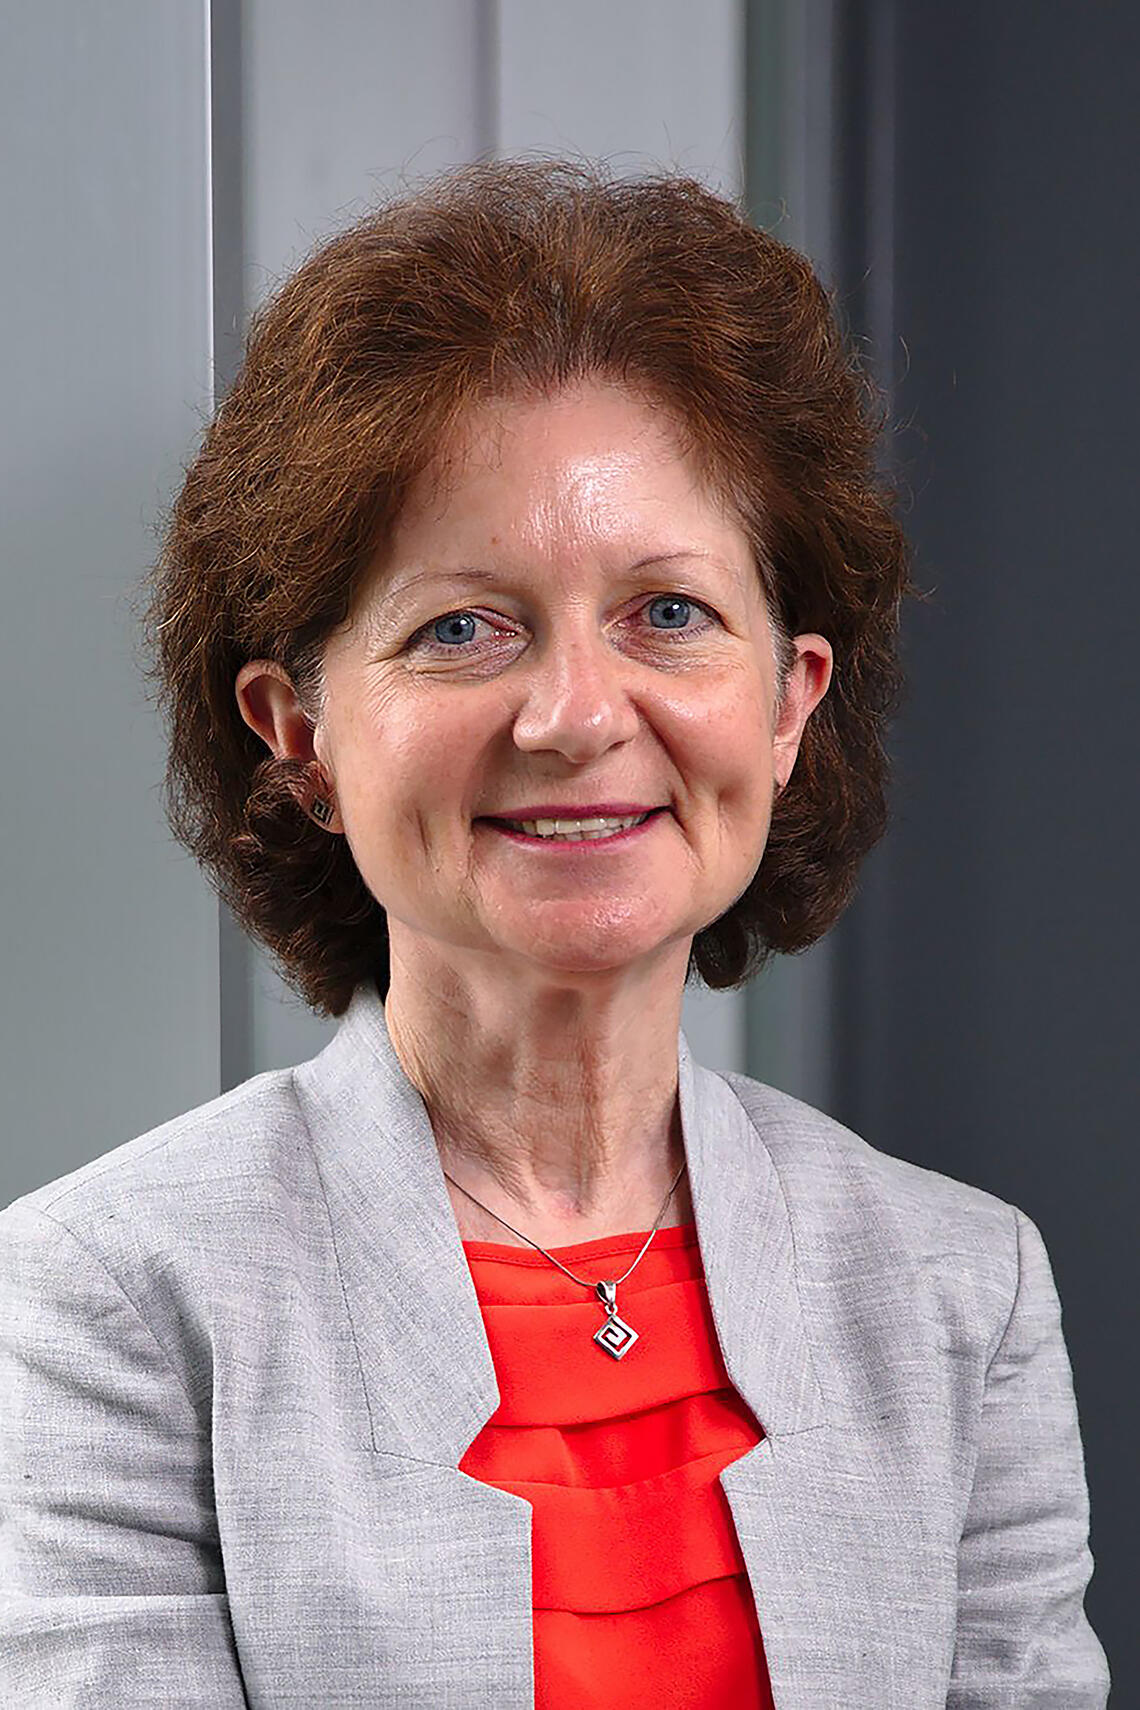 Dr. Brenda Hemmelgarn